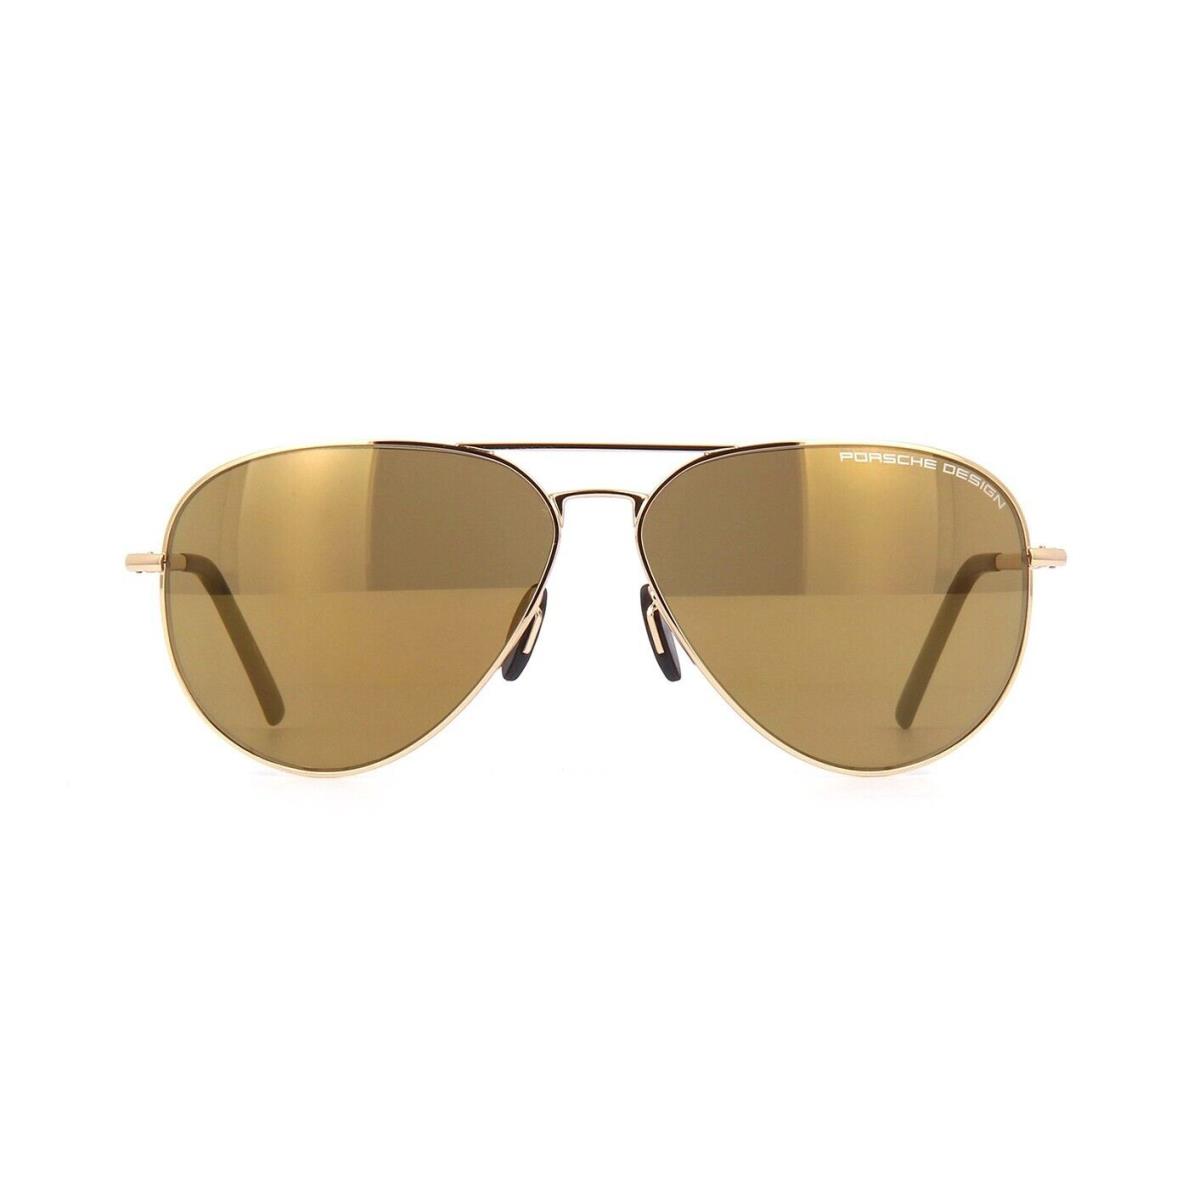 Porsche Design P8508/S Gold/brown Gold Mirrored E Sunglasses